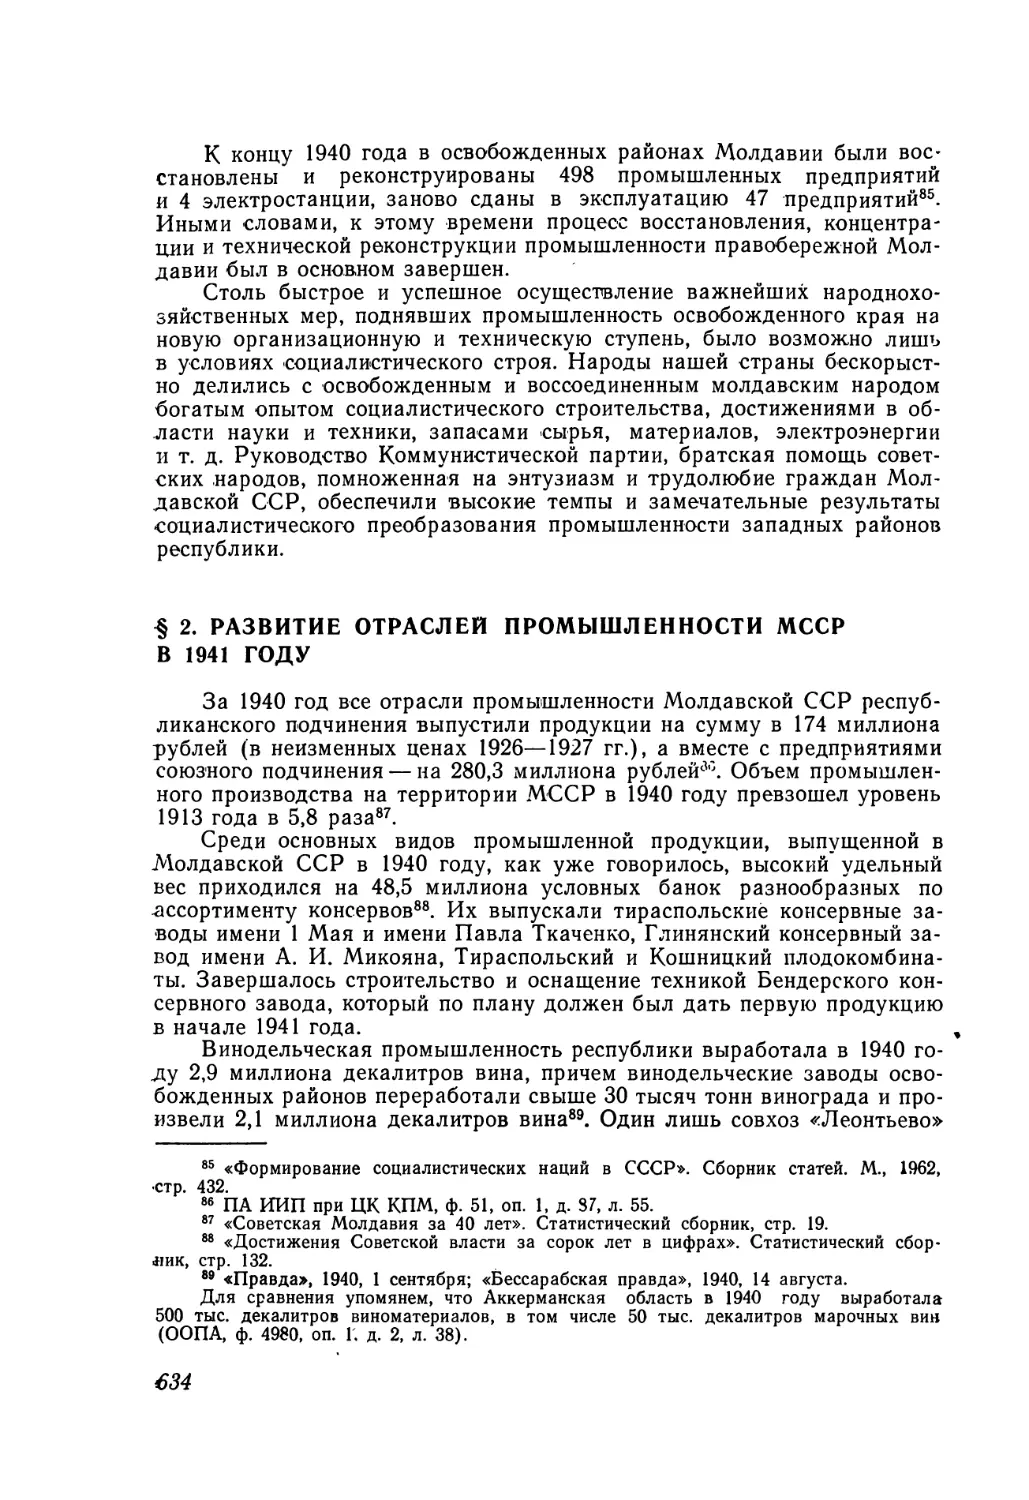 § 2. Развитие отраслей промышленности МССР в 1941 году